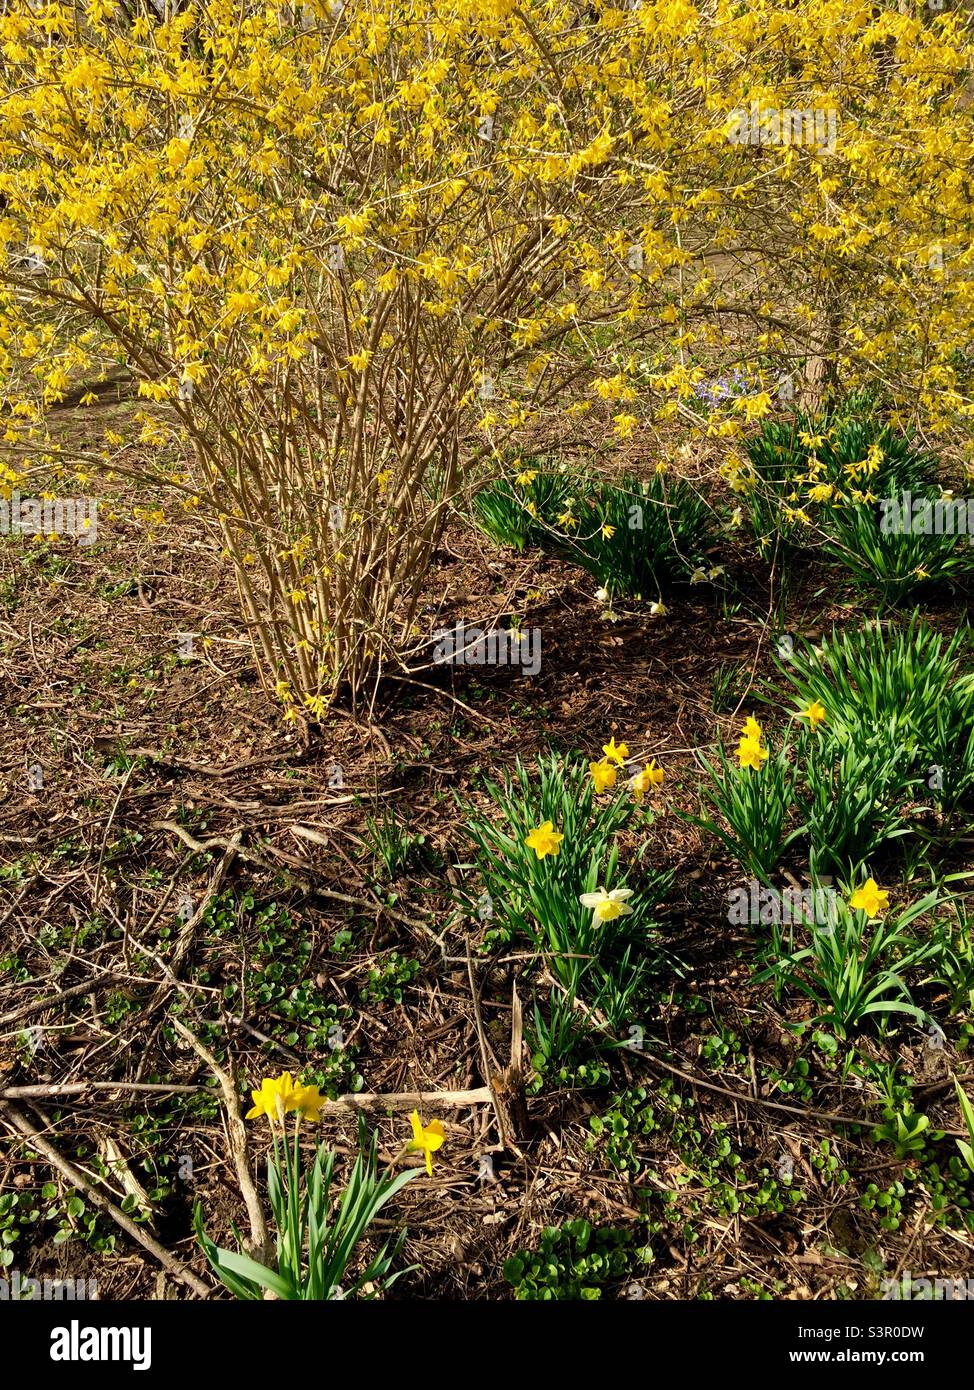 Jonquilles et forsythia, or jaune du début du printemps dans une zone sauvage, Ontario, Canada. Fraîcheur, nouveau début, un autre cycle. Banque D'Images